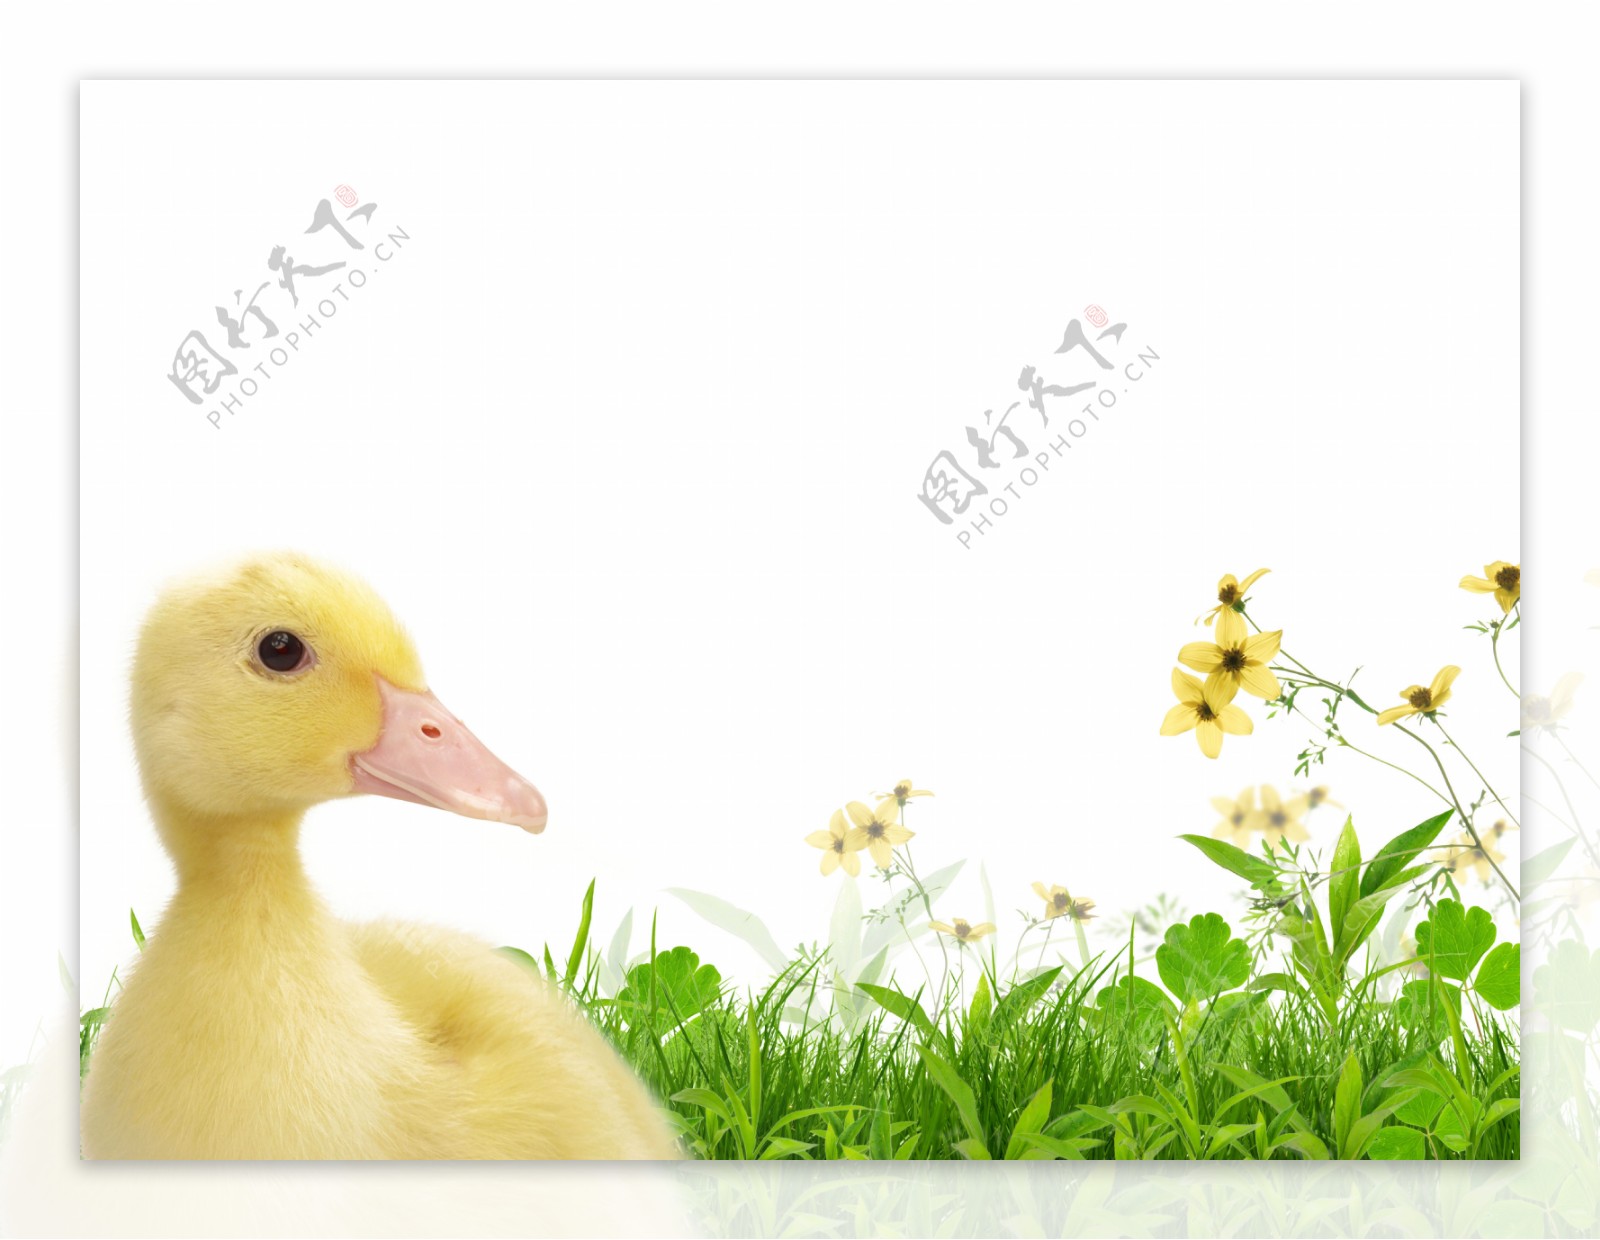 草地上的可爱小鸭子图片